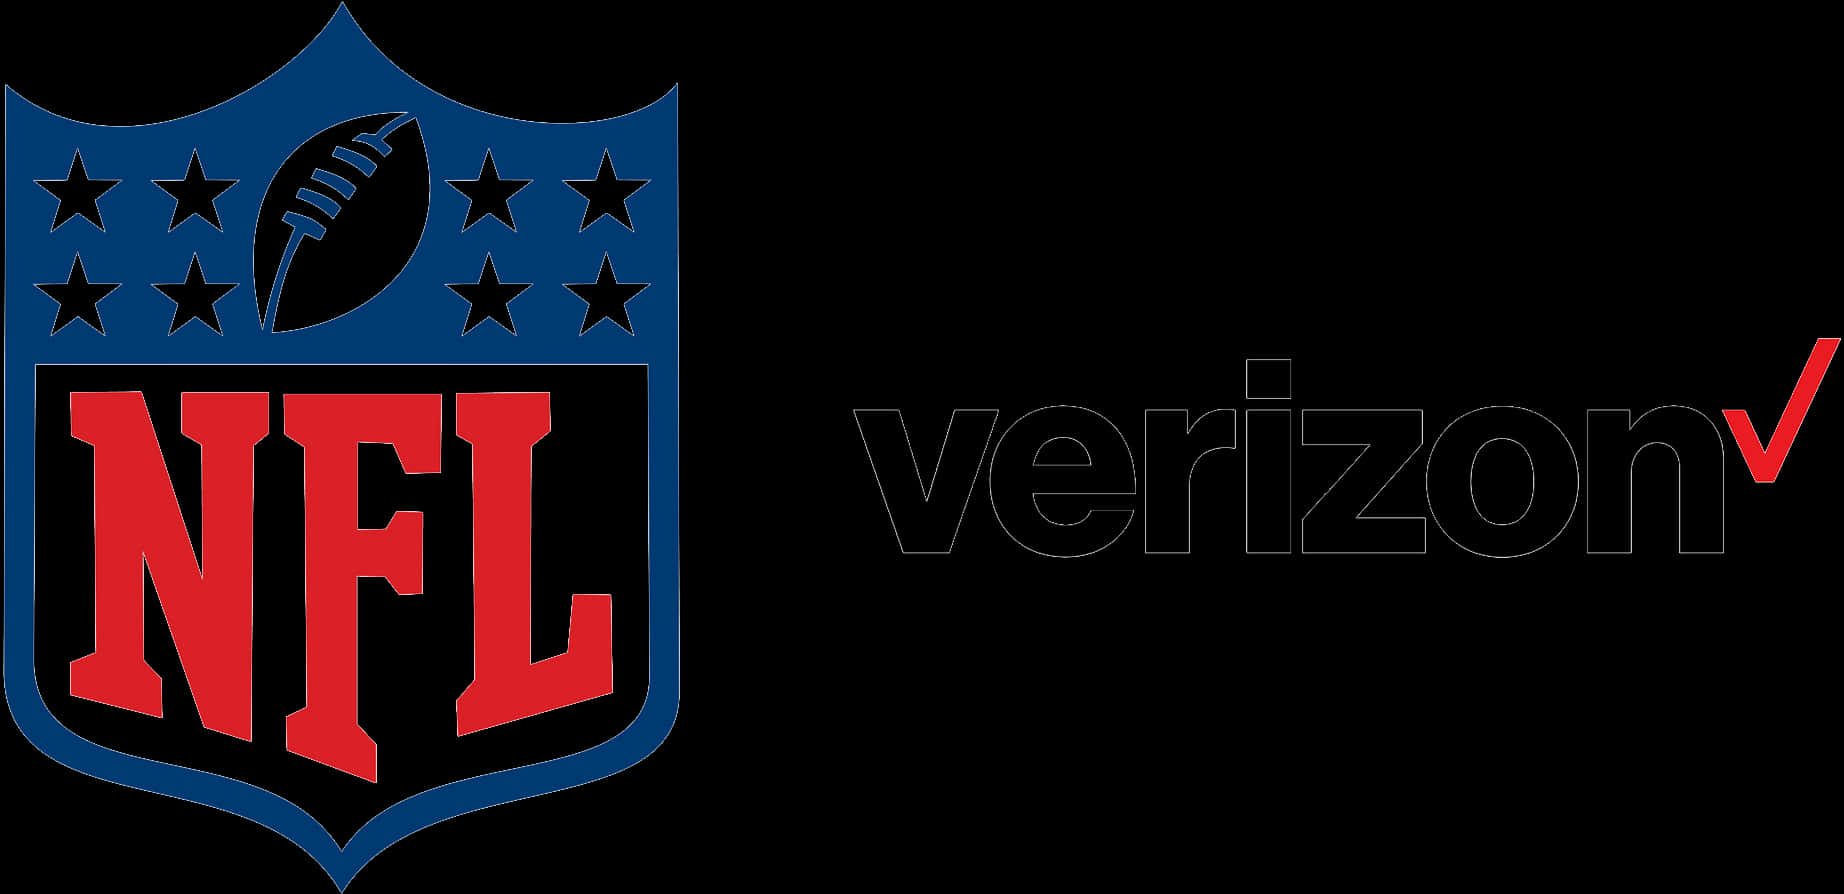 N F Land Verizon Partnership Logo